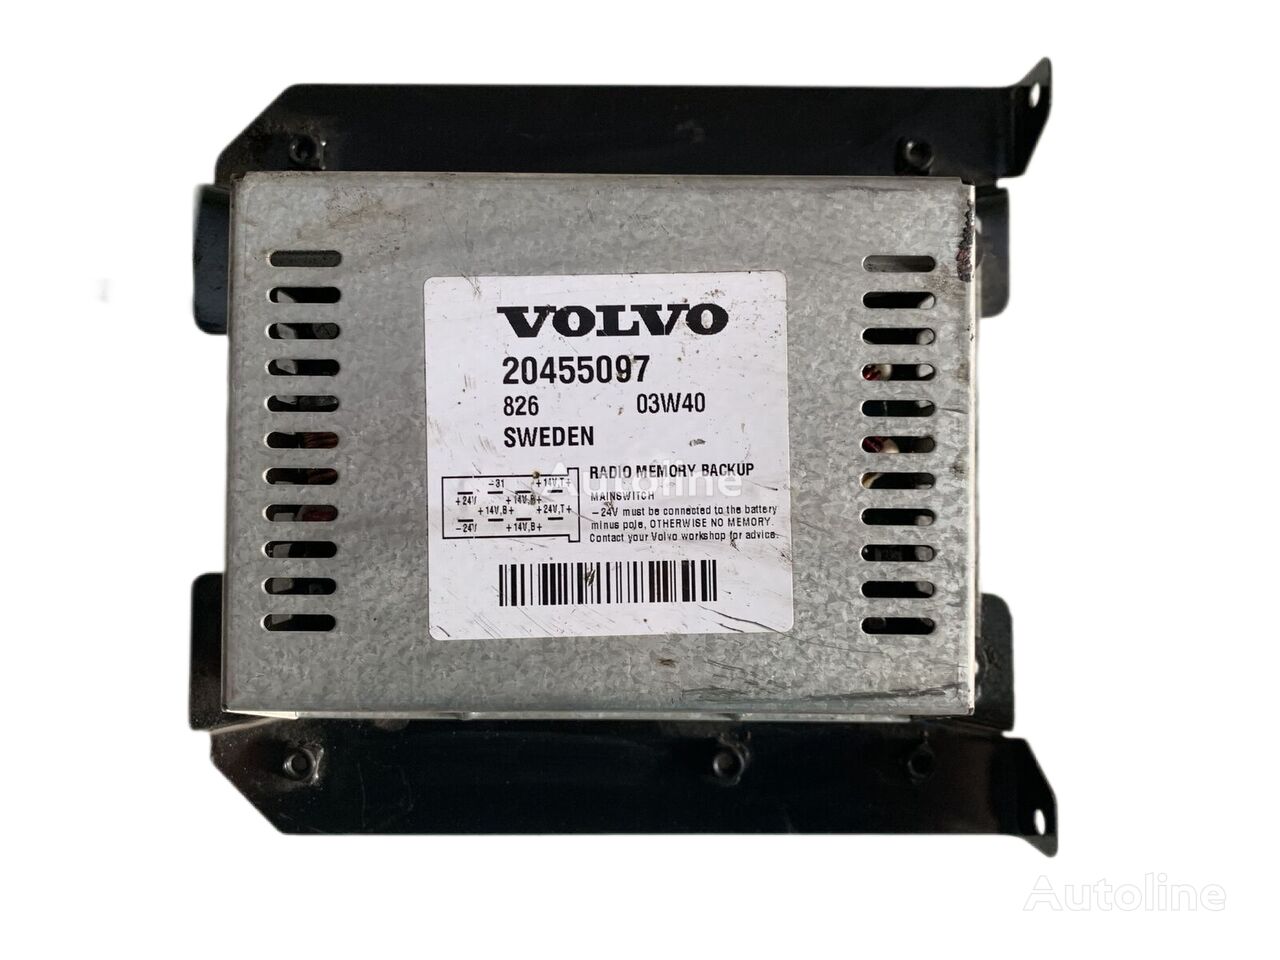 Volvo FH 16 Radio Memory Backup 20455097 upravljačka jedinica za kamiona